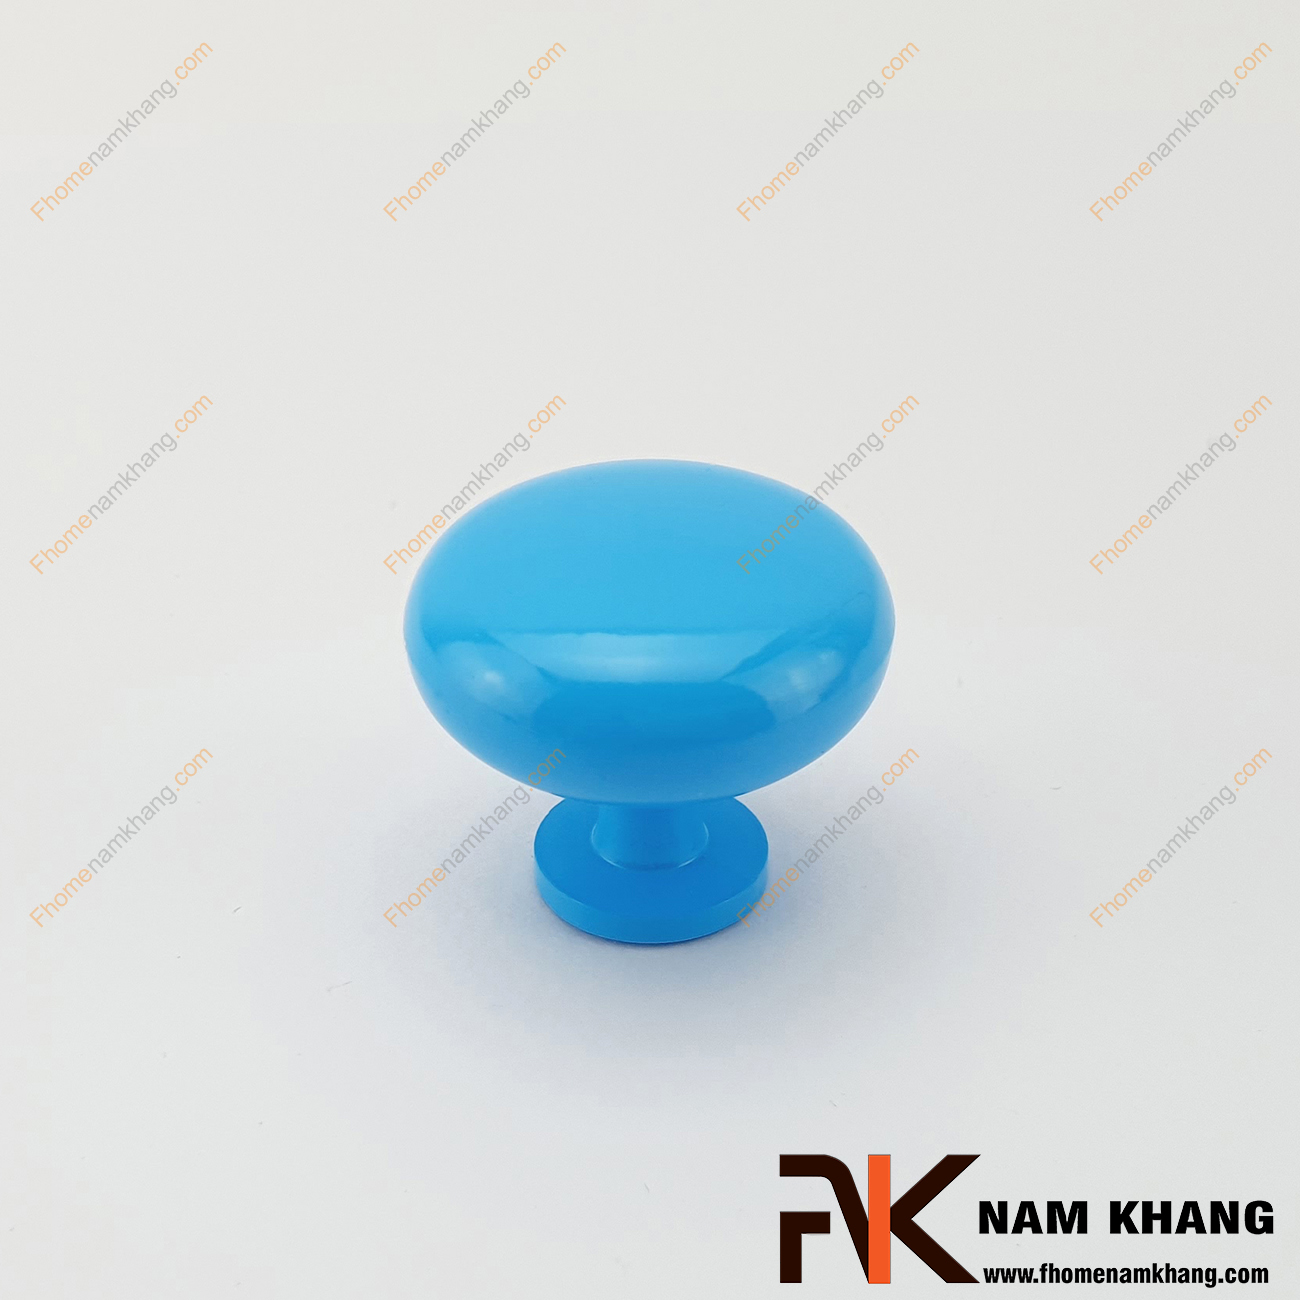 Núm cửa tủ dạng tròn màu xanh dương NK172-XD - sản phẩm phụ kiện cửa tủ với nhiều màu sắc được phối hợp rộng rãi trên các dạng phong cách tủ kệ